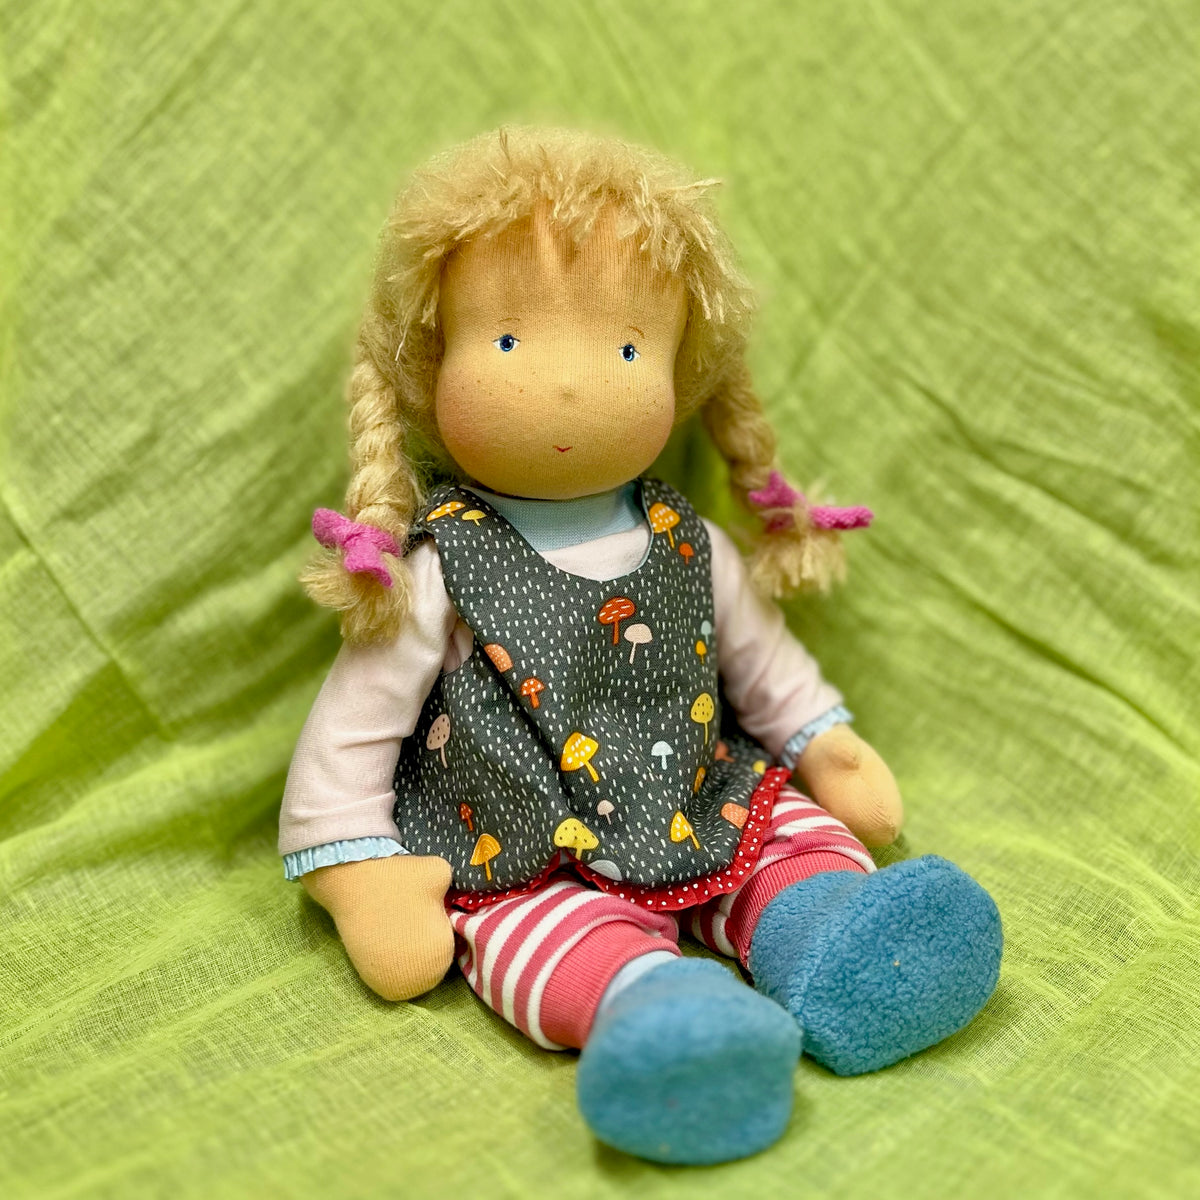 Puppe Baby 35cm - Mädchen mit Zöpfchen - Andrea Rath